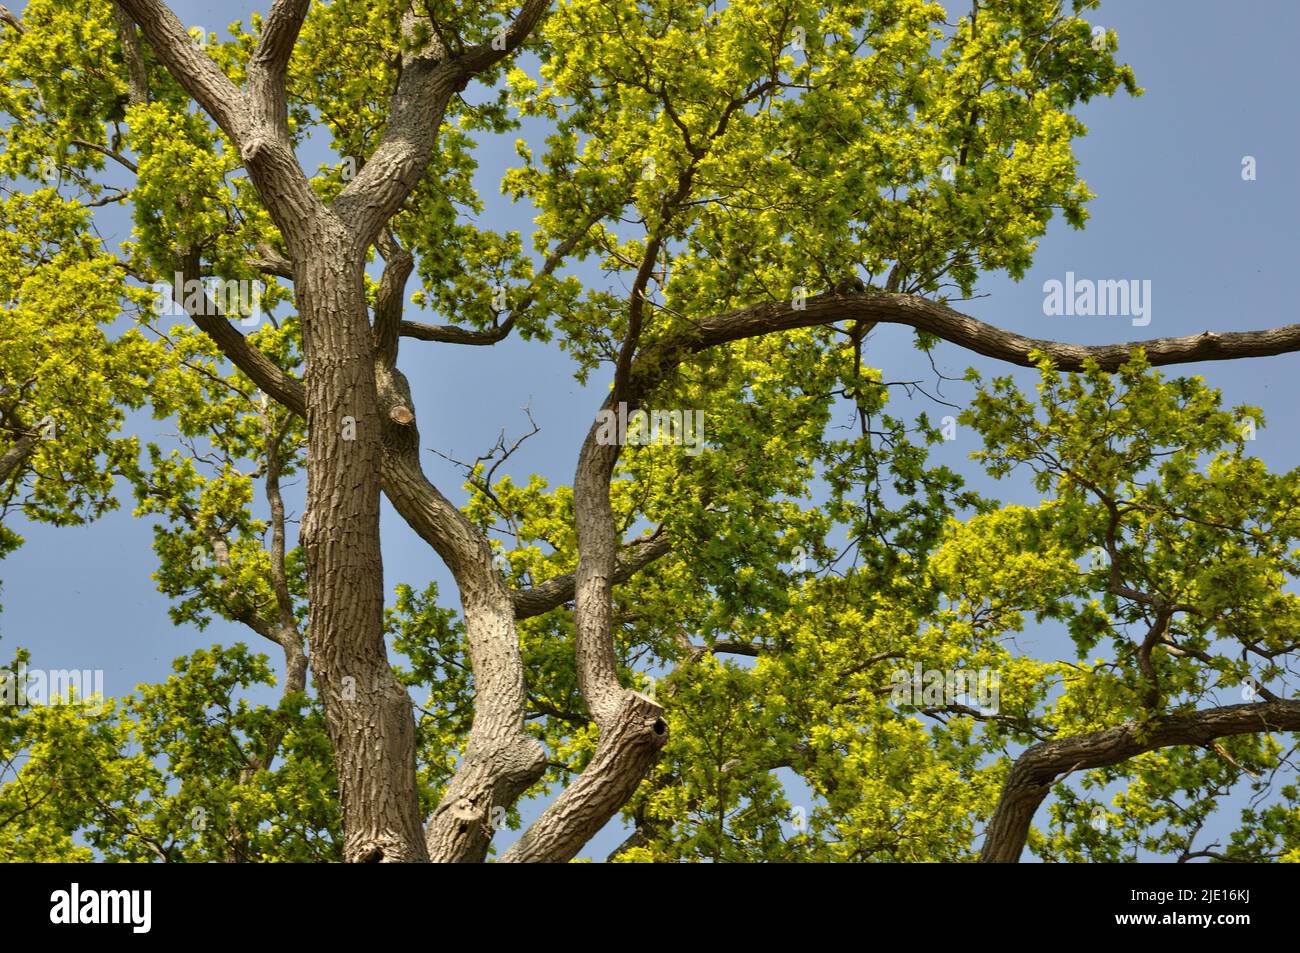 Boussole Sur L'arbre Extérieur Image stock - Image du bois, wooden: 47925913